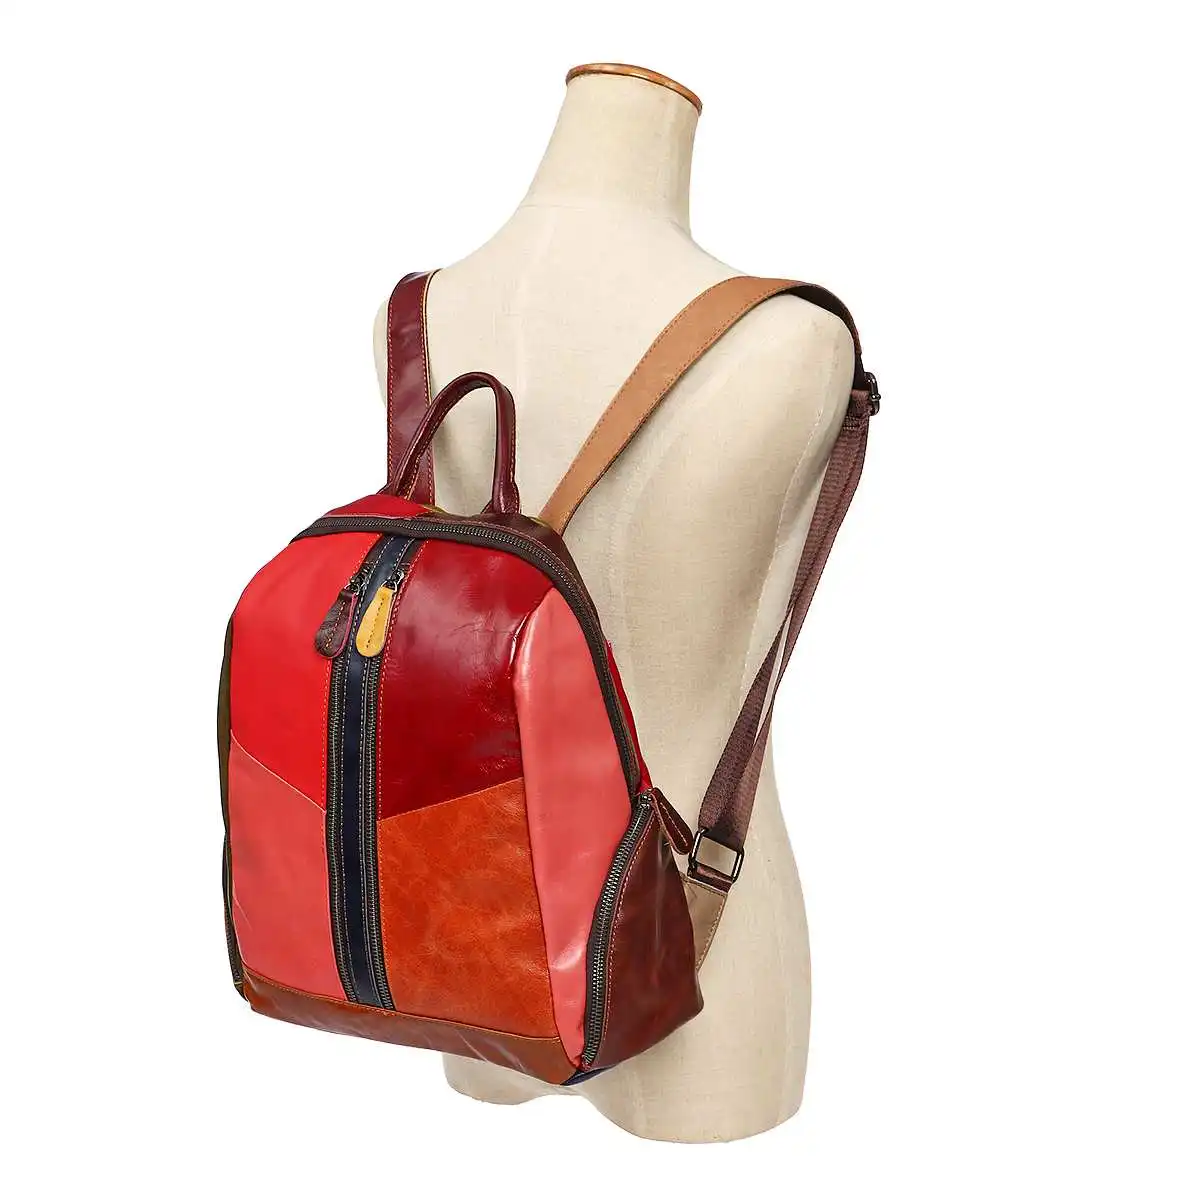 AEQUEEN Feminina Mochilas, женские рюкзаки из натуральной кожи, в стиле пэчворк, школьный рюкзак для девочек, цветной рюкзак, Ретро стиль, сумка на плечо для женщин